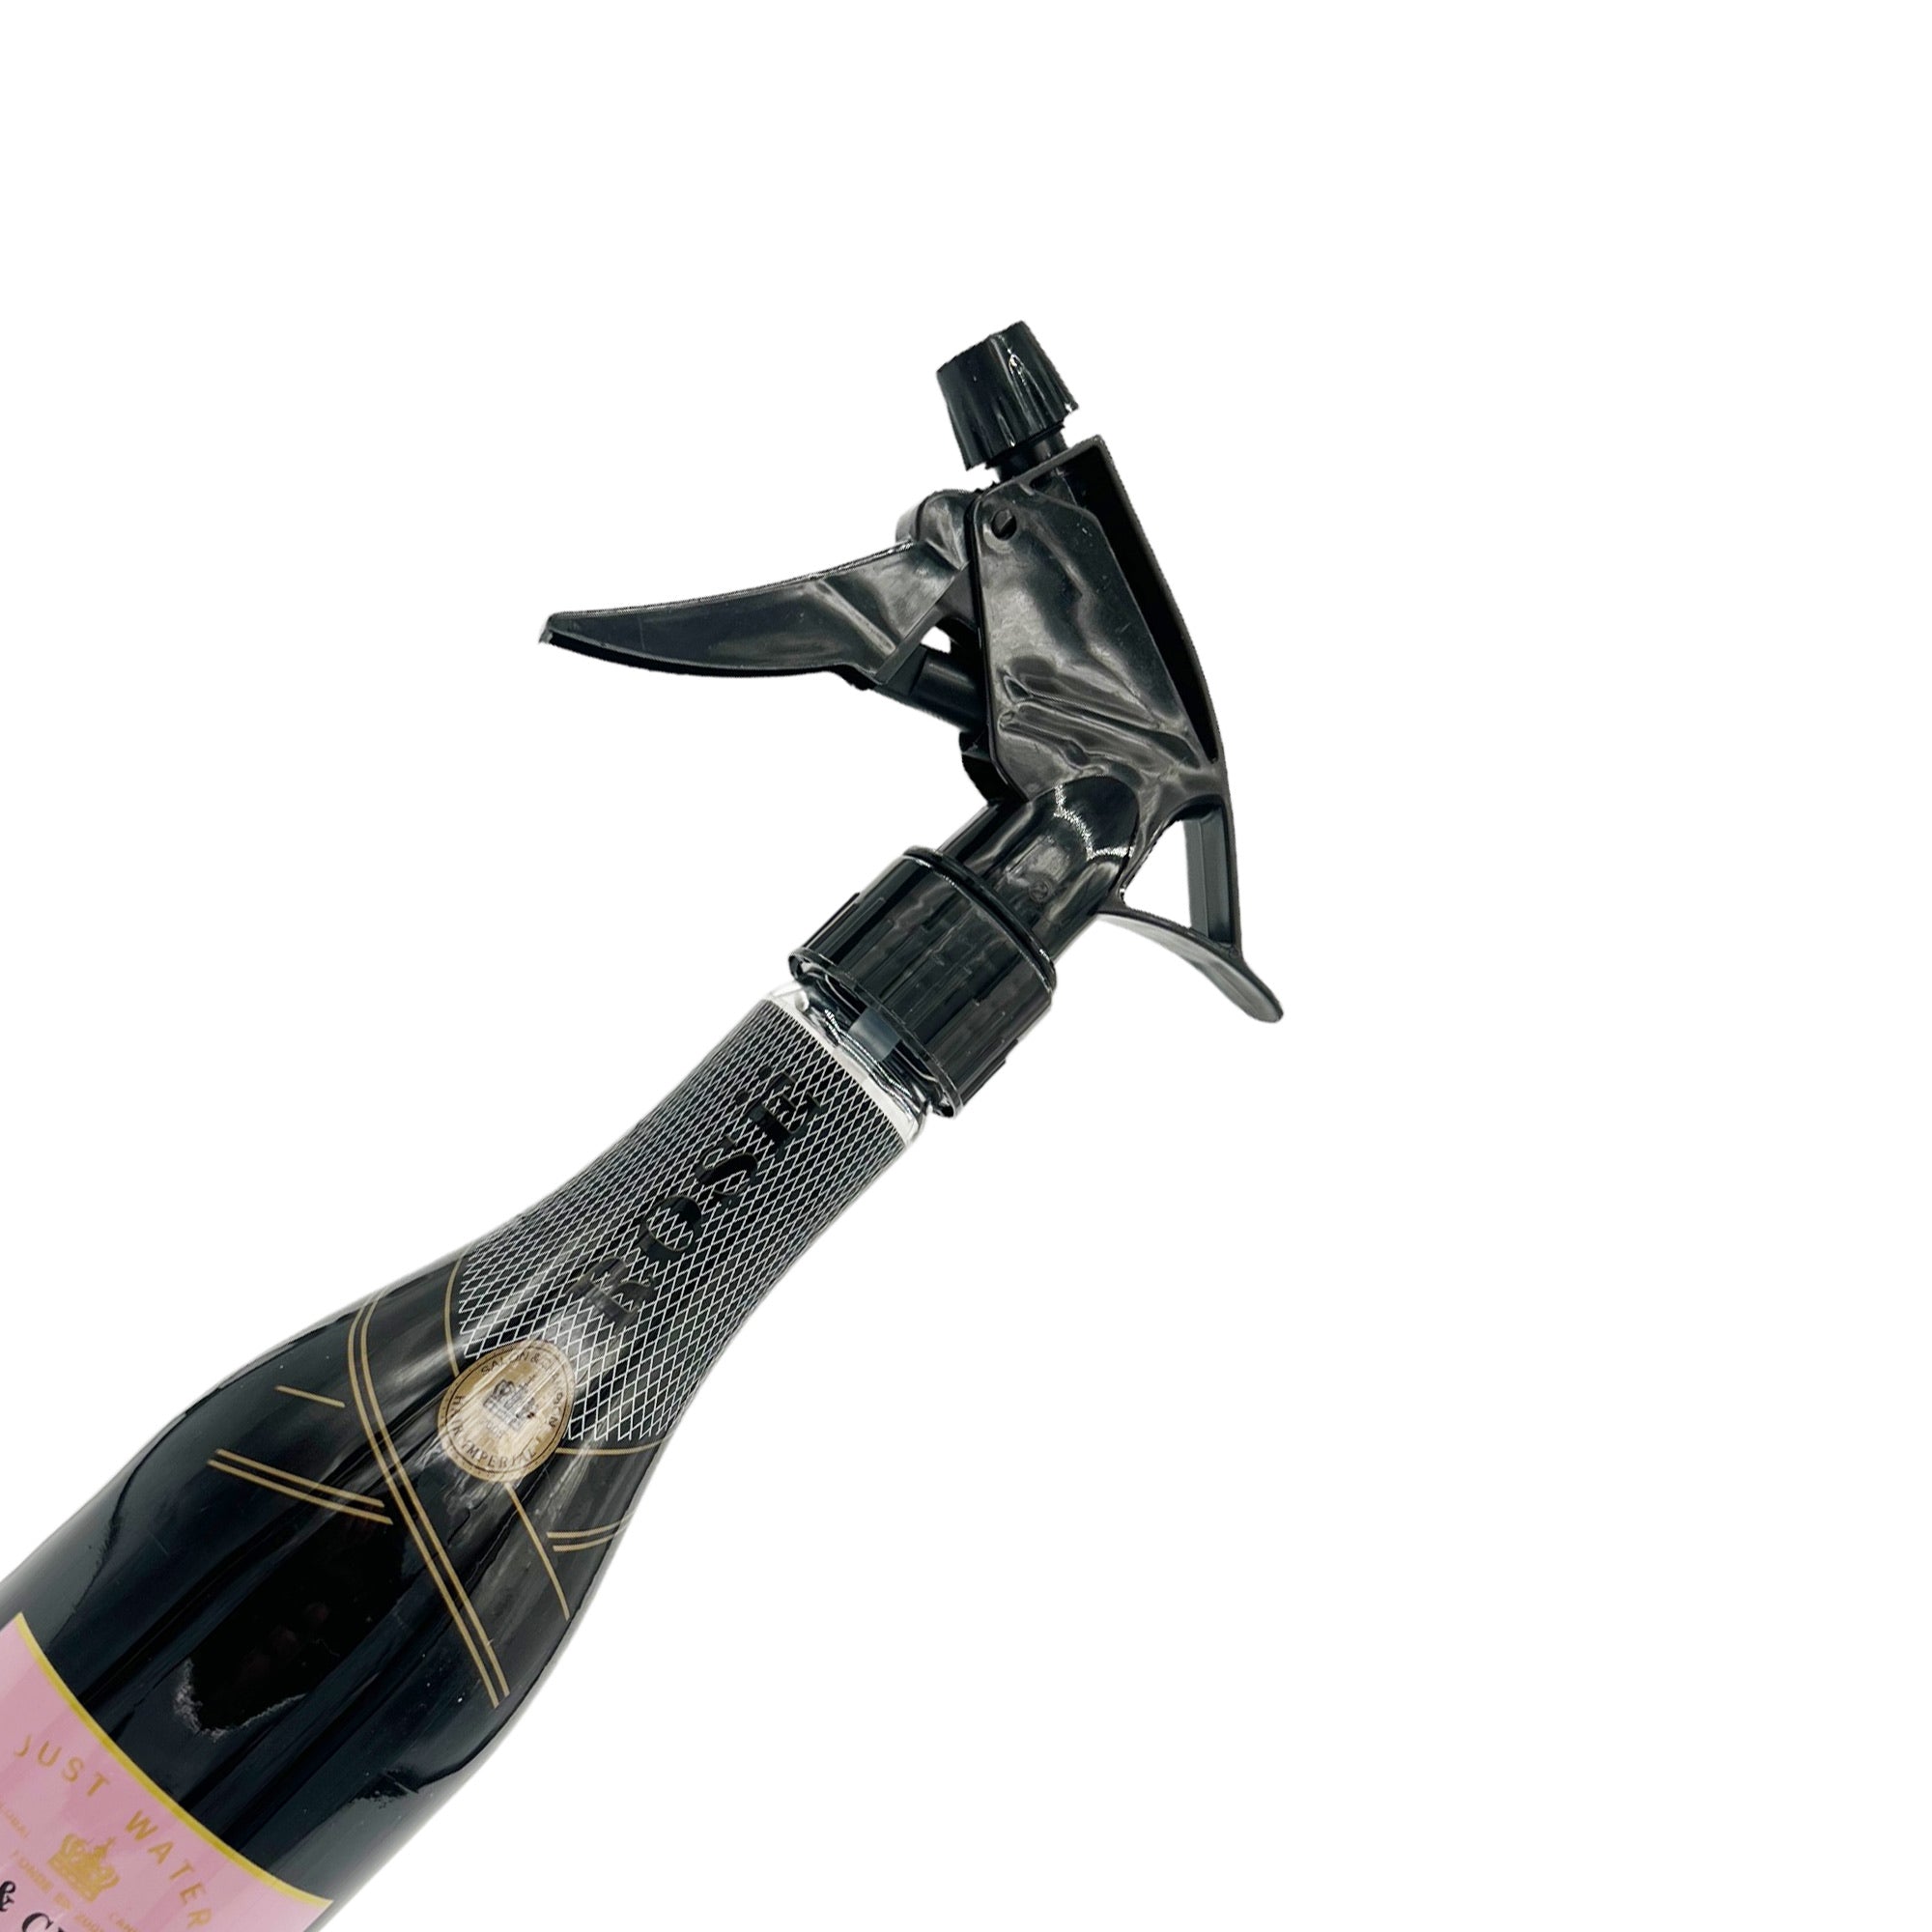 Eson - Water Spray Bottle 280ml Extreme Mist Sprayer Champagne Style (Black)